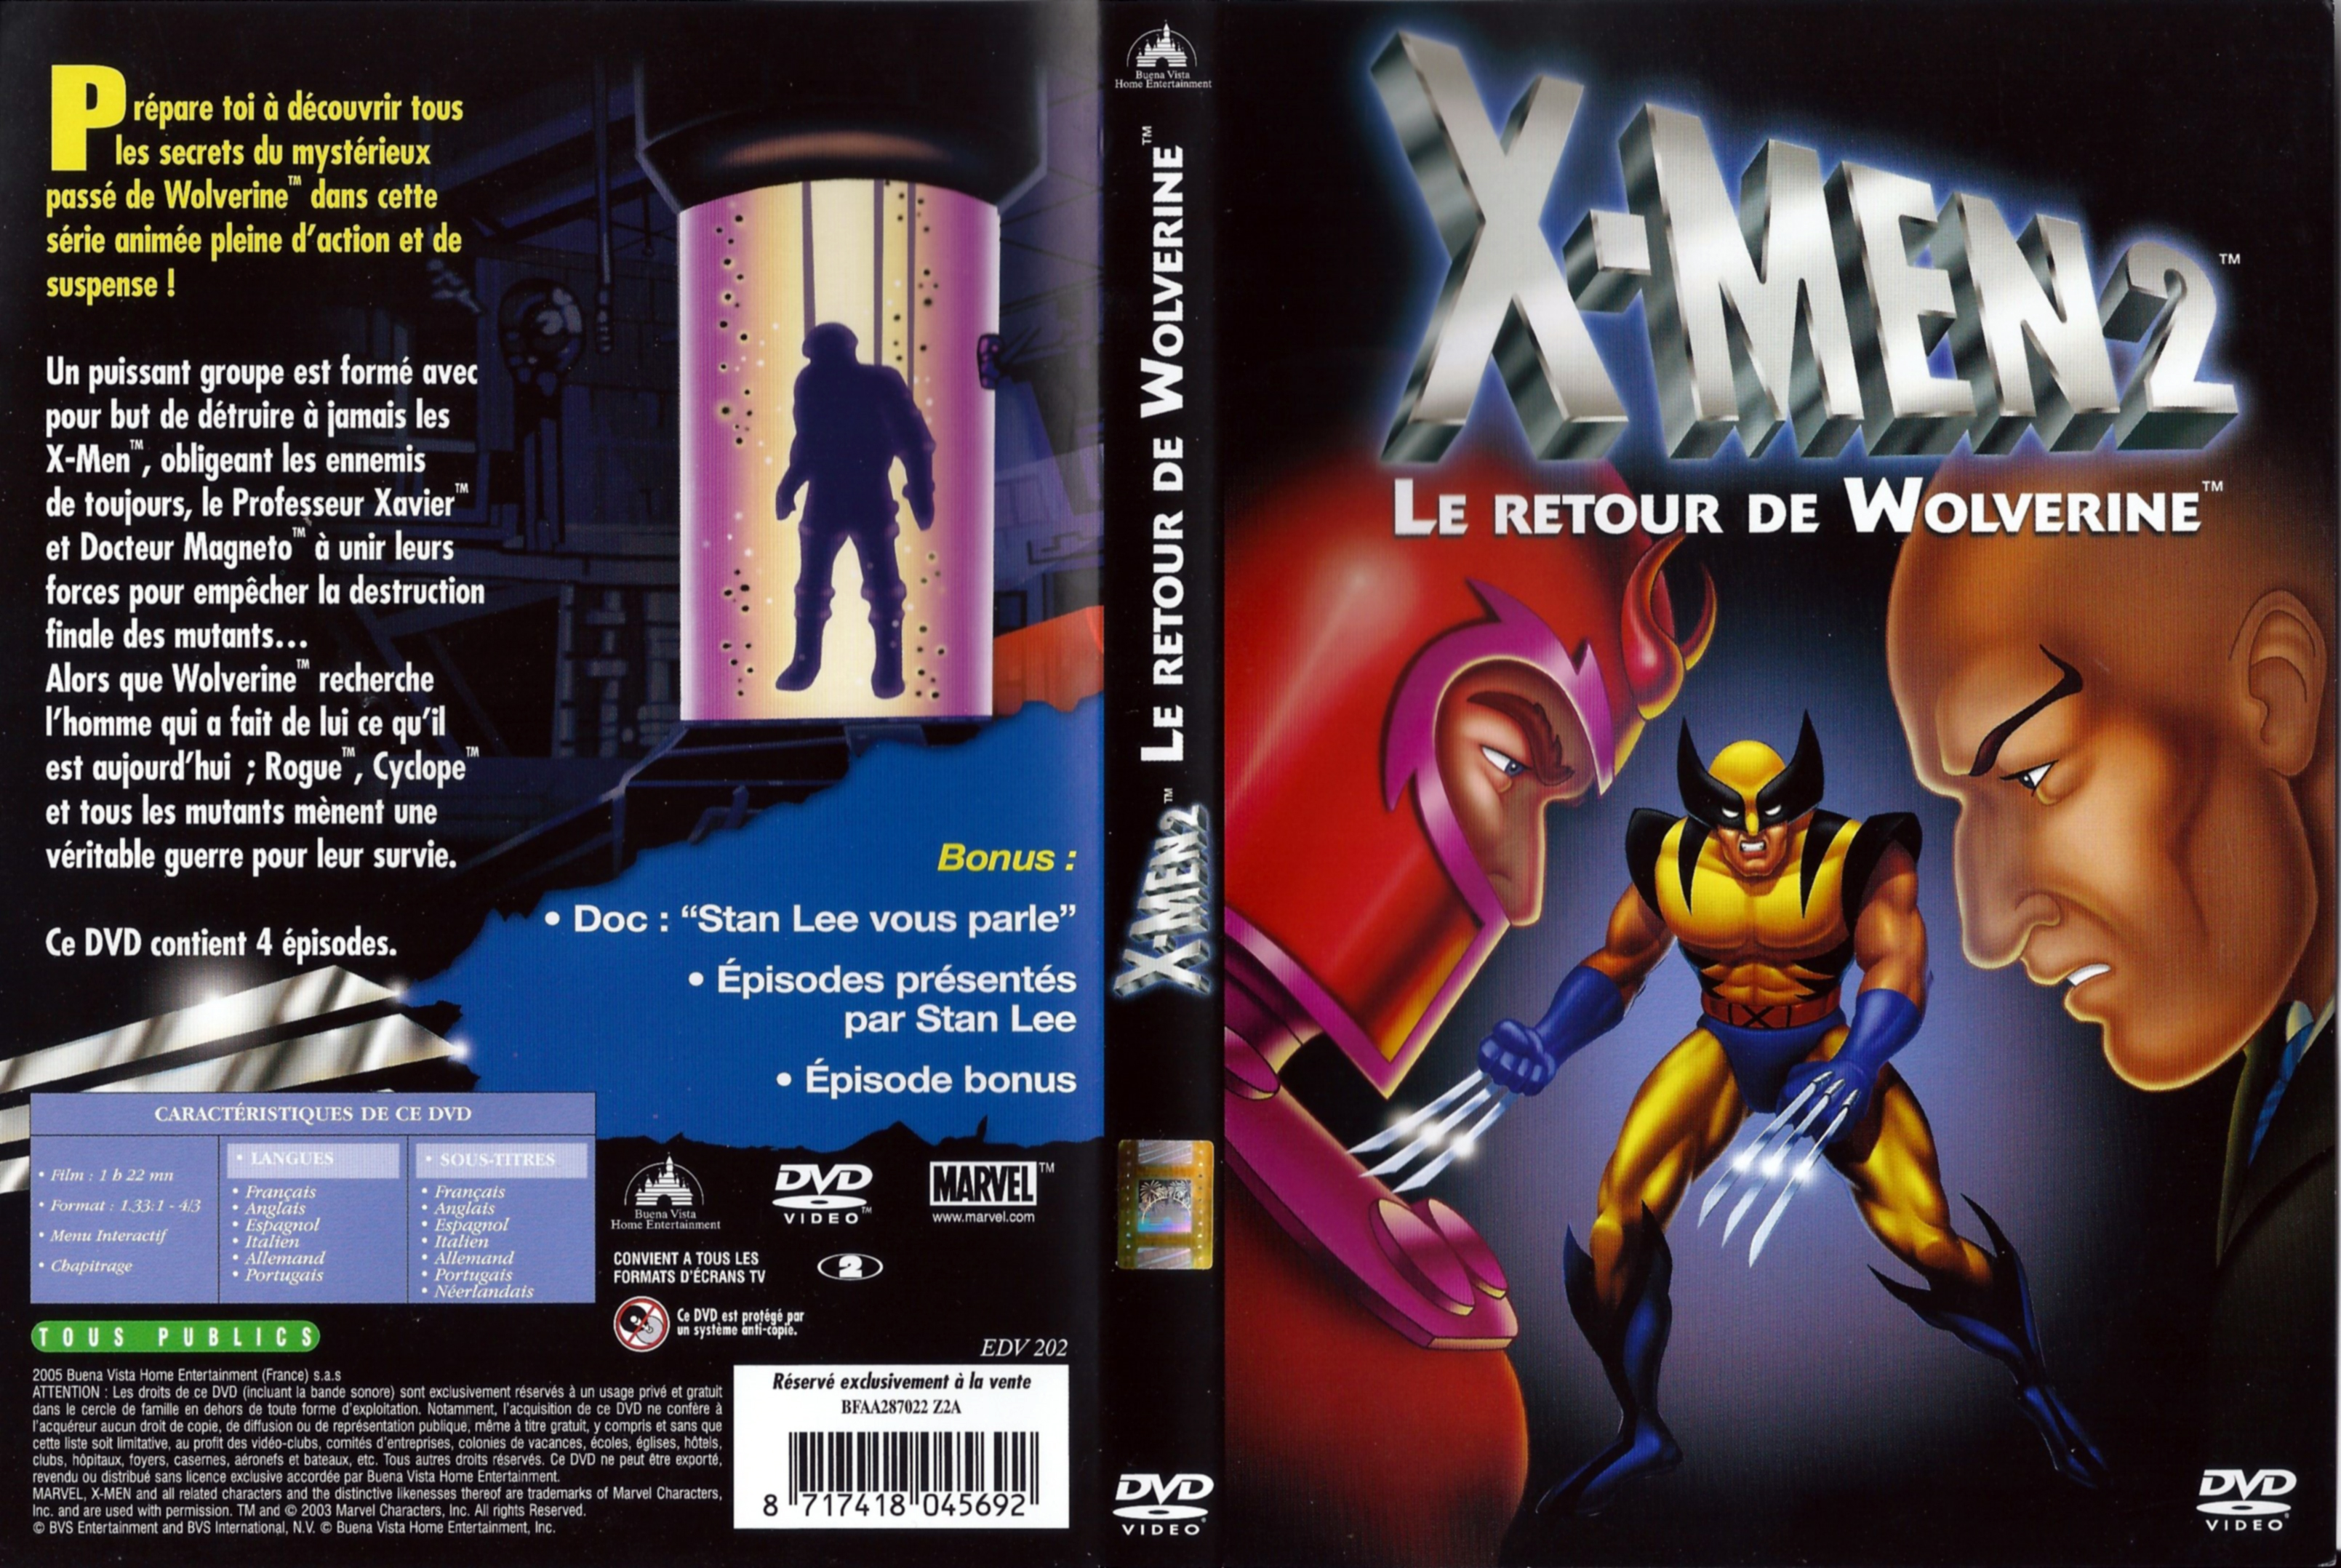 Jaquette DVD X-men 2 Le retour de wolverine